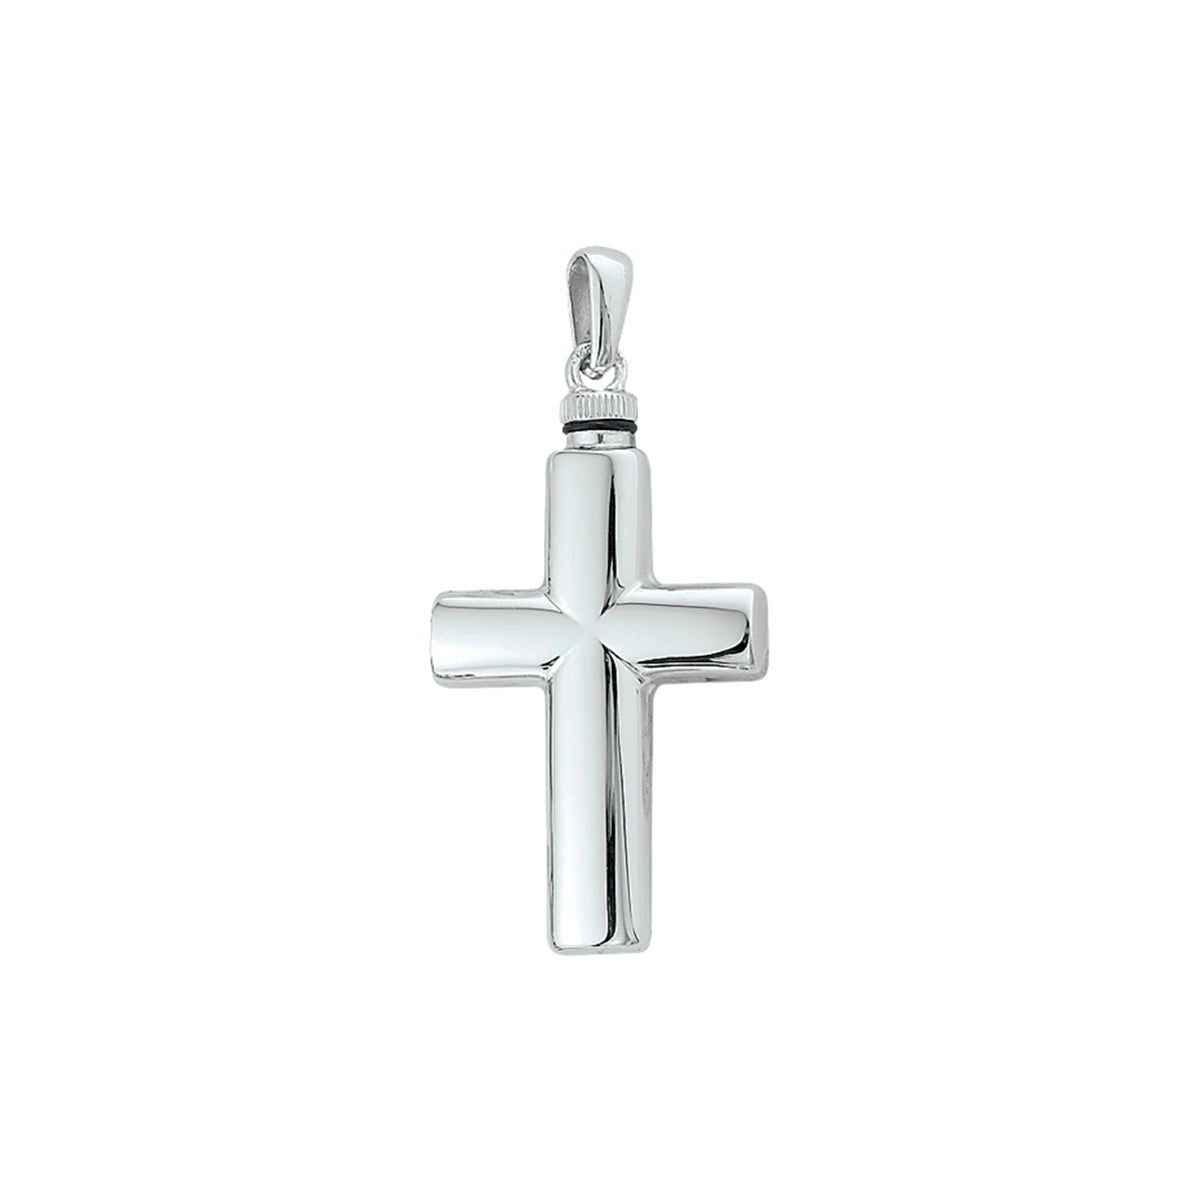  Zilveren ashanger kruis, gedenksieraad is geschikt om as en ook haar in te verwerken. Kenmerken van dit sieraad zijn dat ze mooi zijn afgewerkt en zo subtiel gemaakt dat ze niet direct herkenbaar zijn als ashouder.